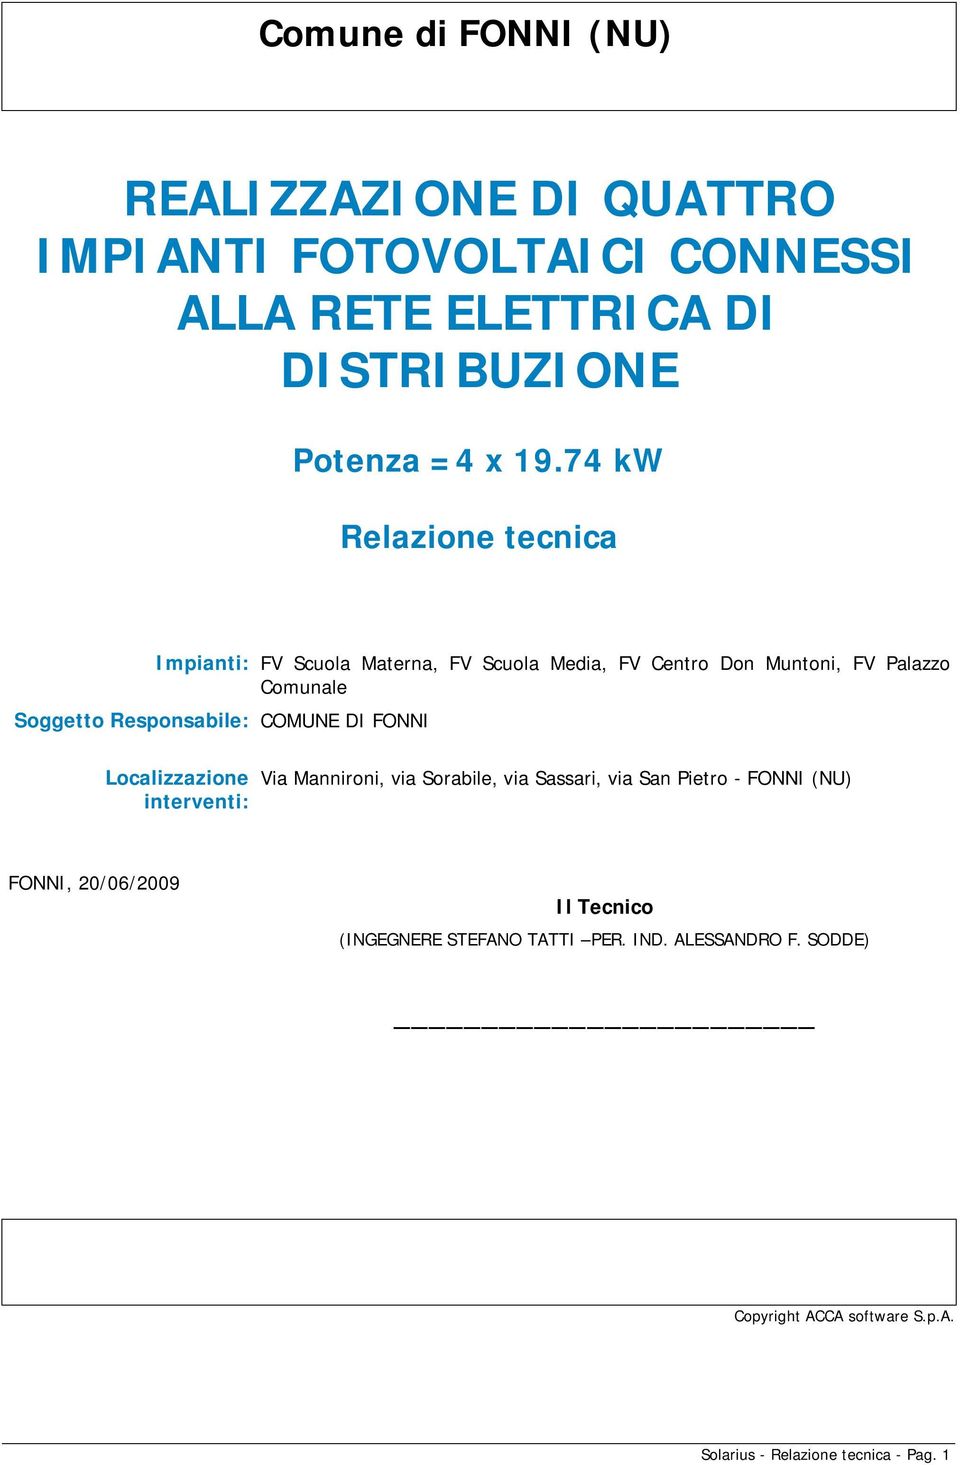 Responsabile: COMUNE DI FONNI Localizzazione interventi: Via Mannironi, via Sorabile, via Sassari, via San Pietro - FONNI (NU)